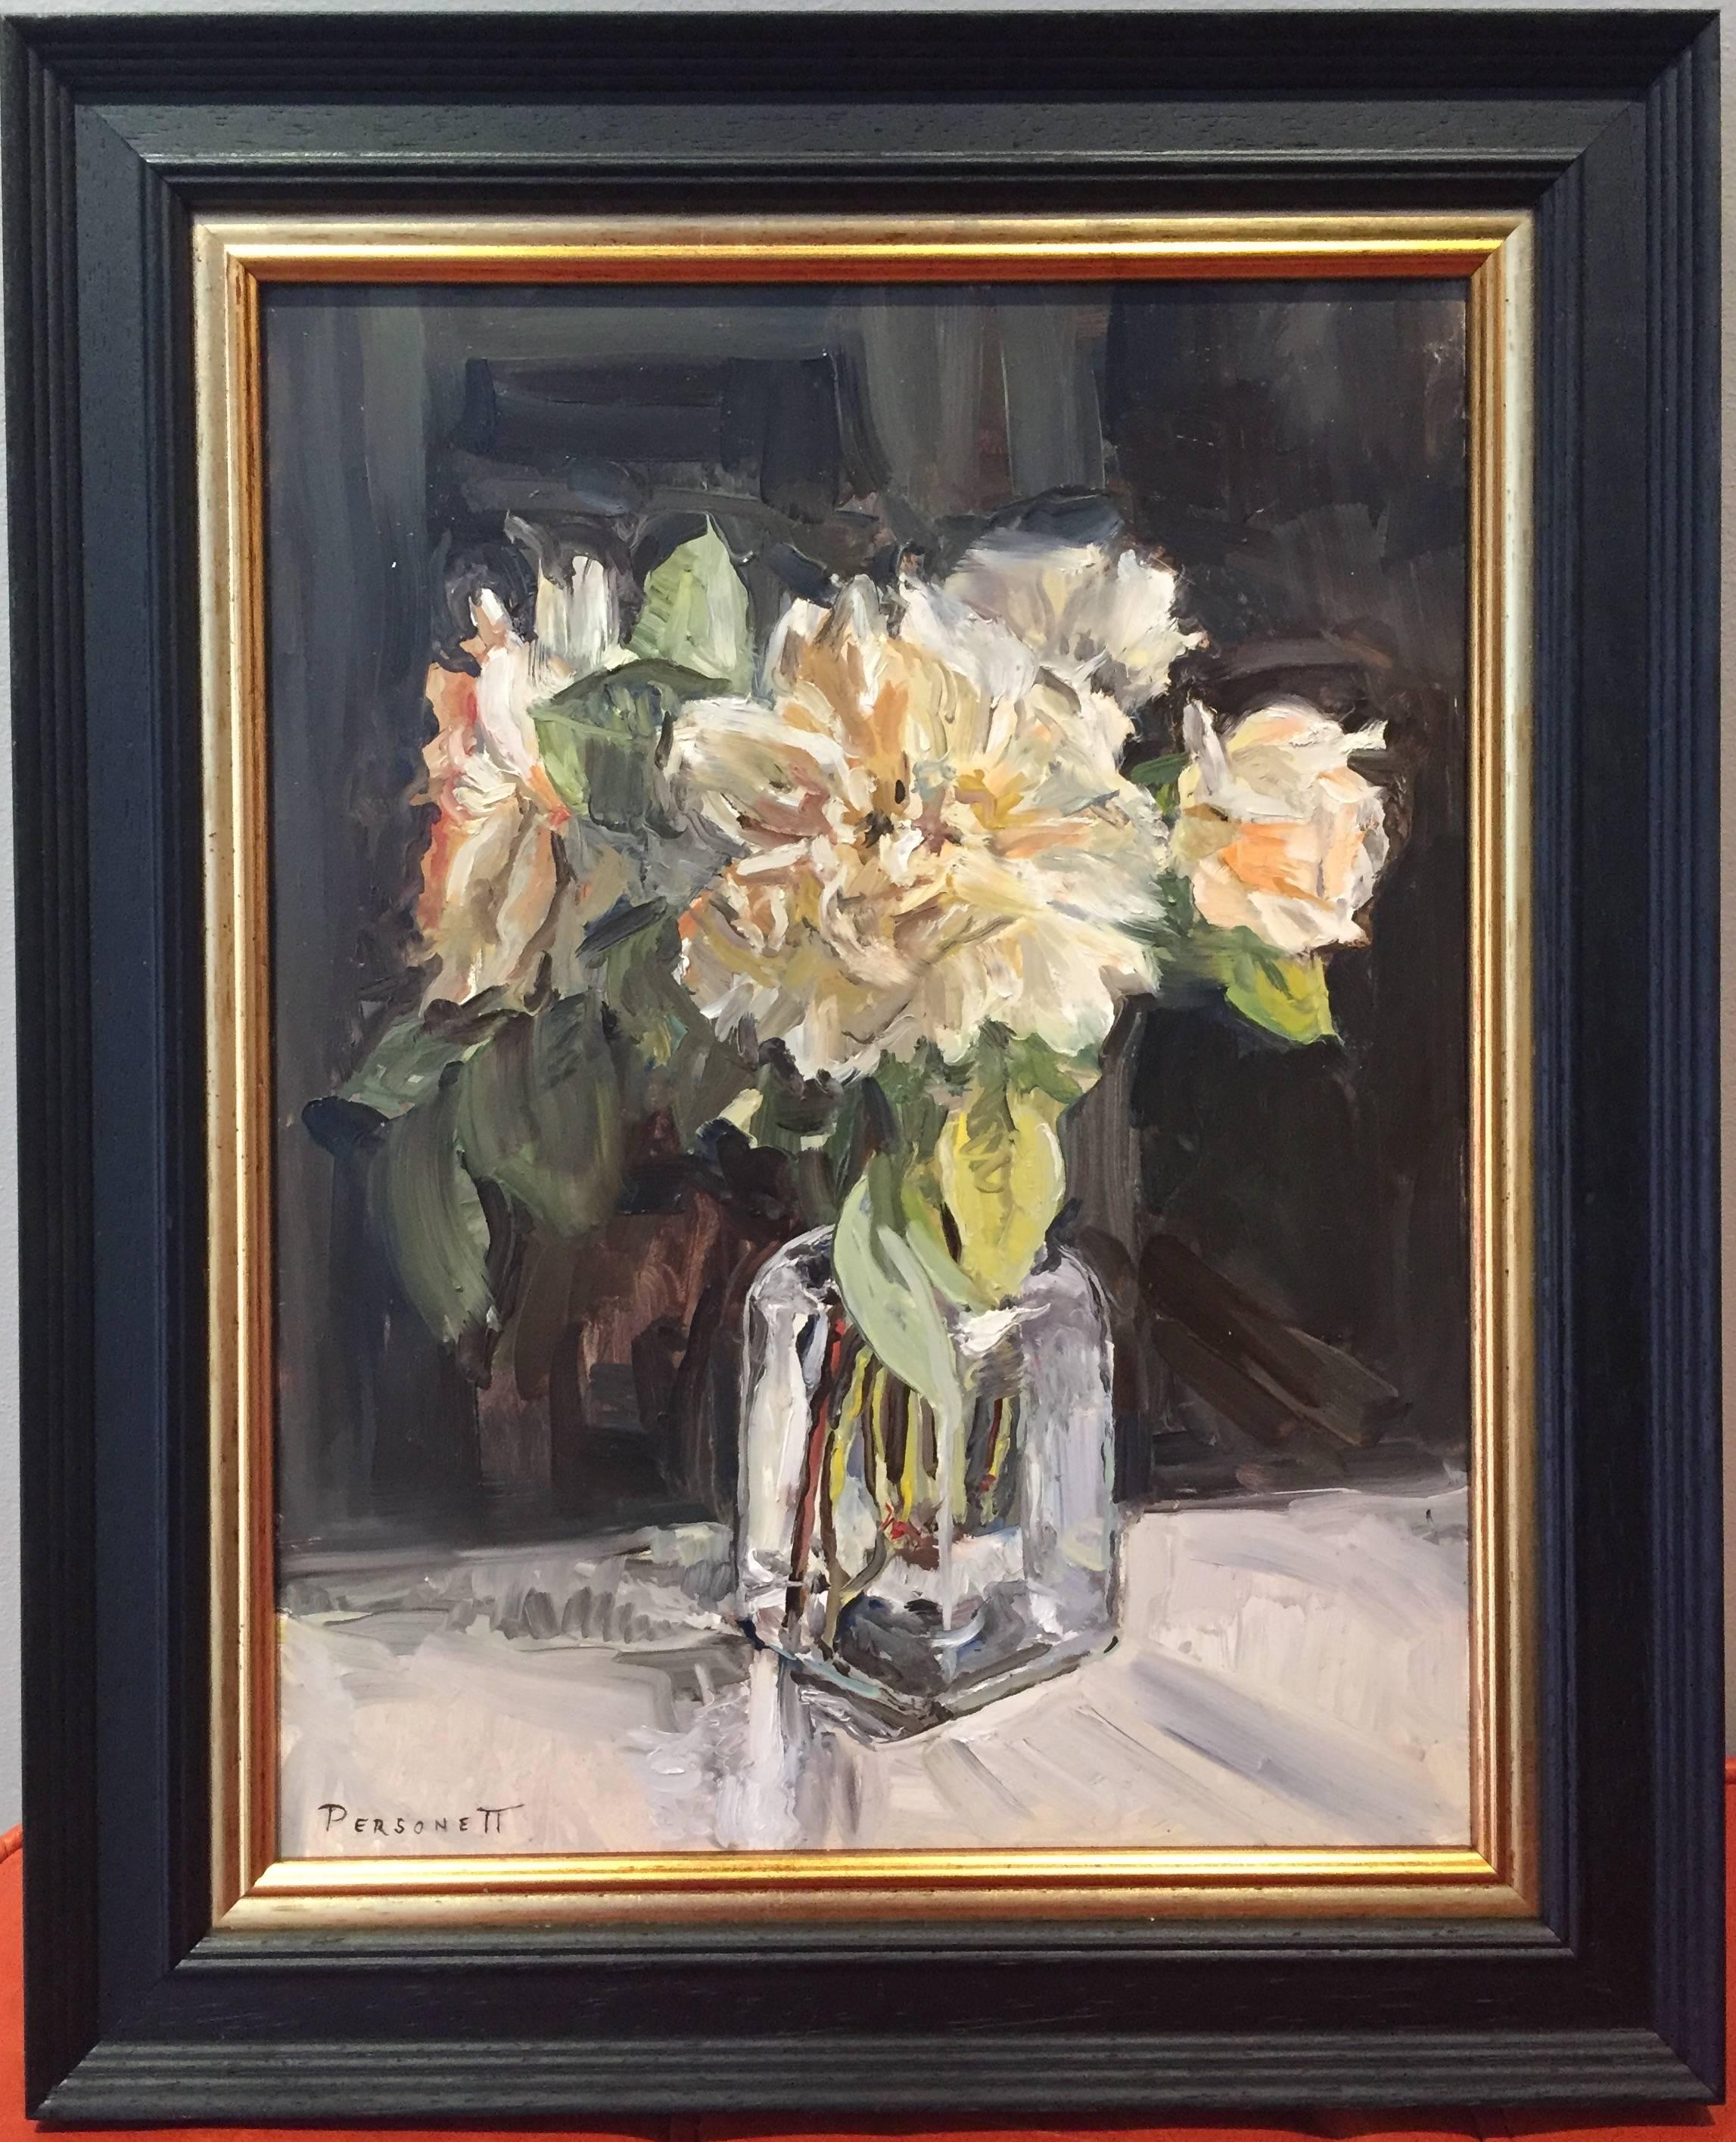 White Roses in Glass - Painting by Rachel Personett